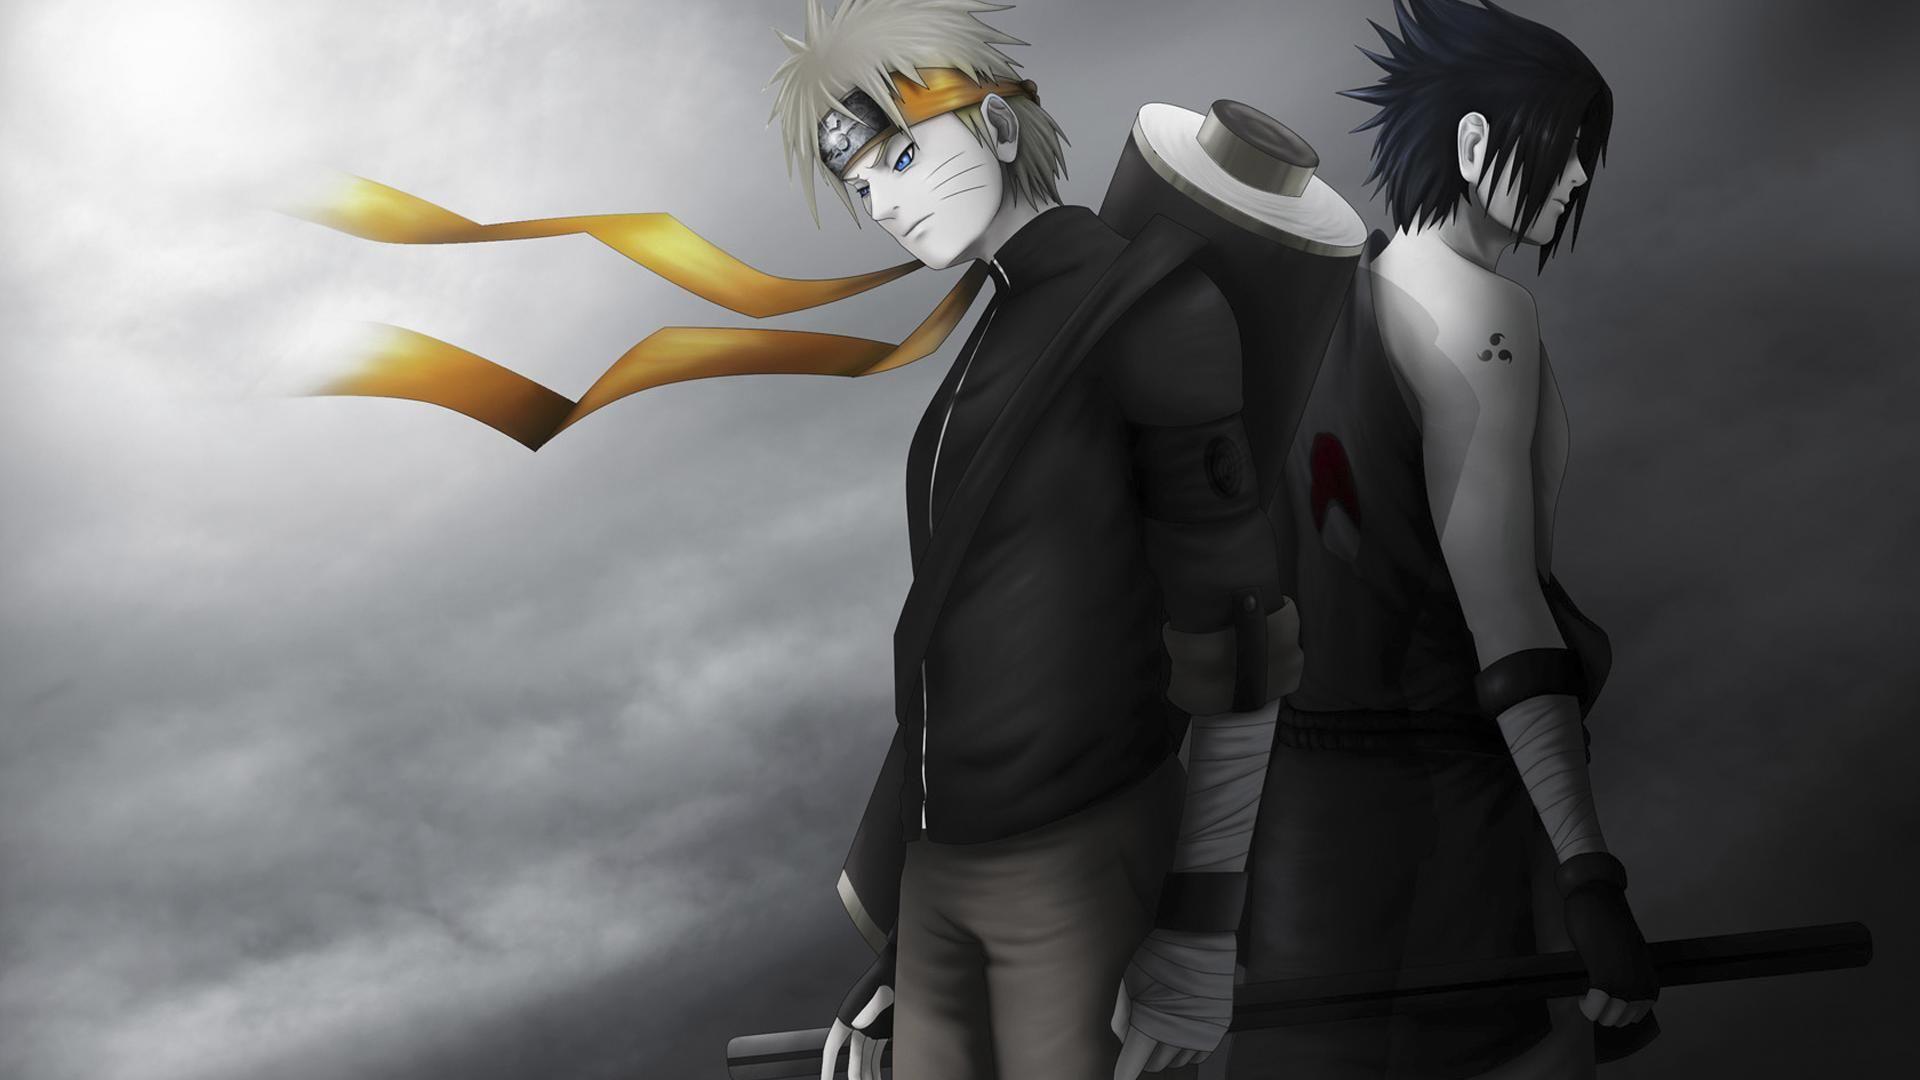 Naruto Sasuke Shippuden Black and White HD Wallpaper. Lugares